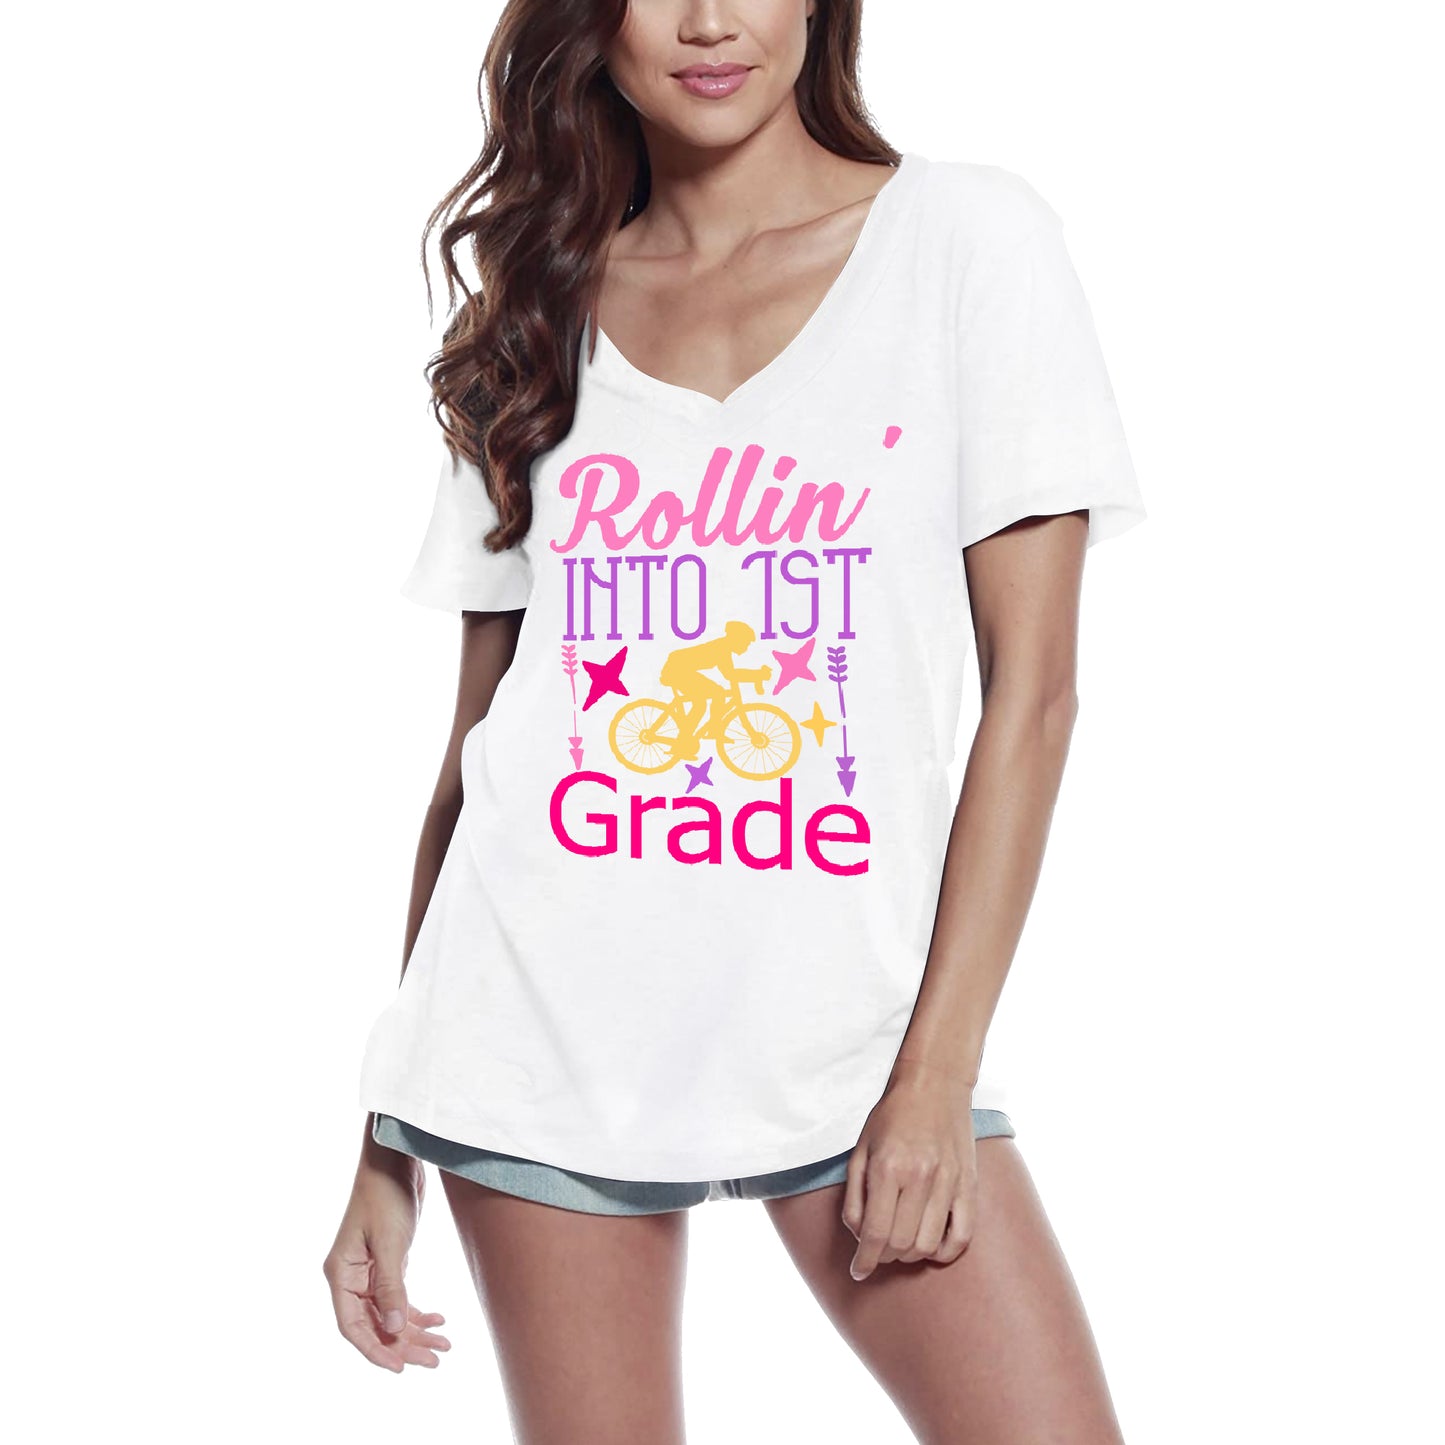 ULTRABASIC Women's T-Shirt Rollin' Into 1st Grade - Short Sleeve Tee Shirt Tops